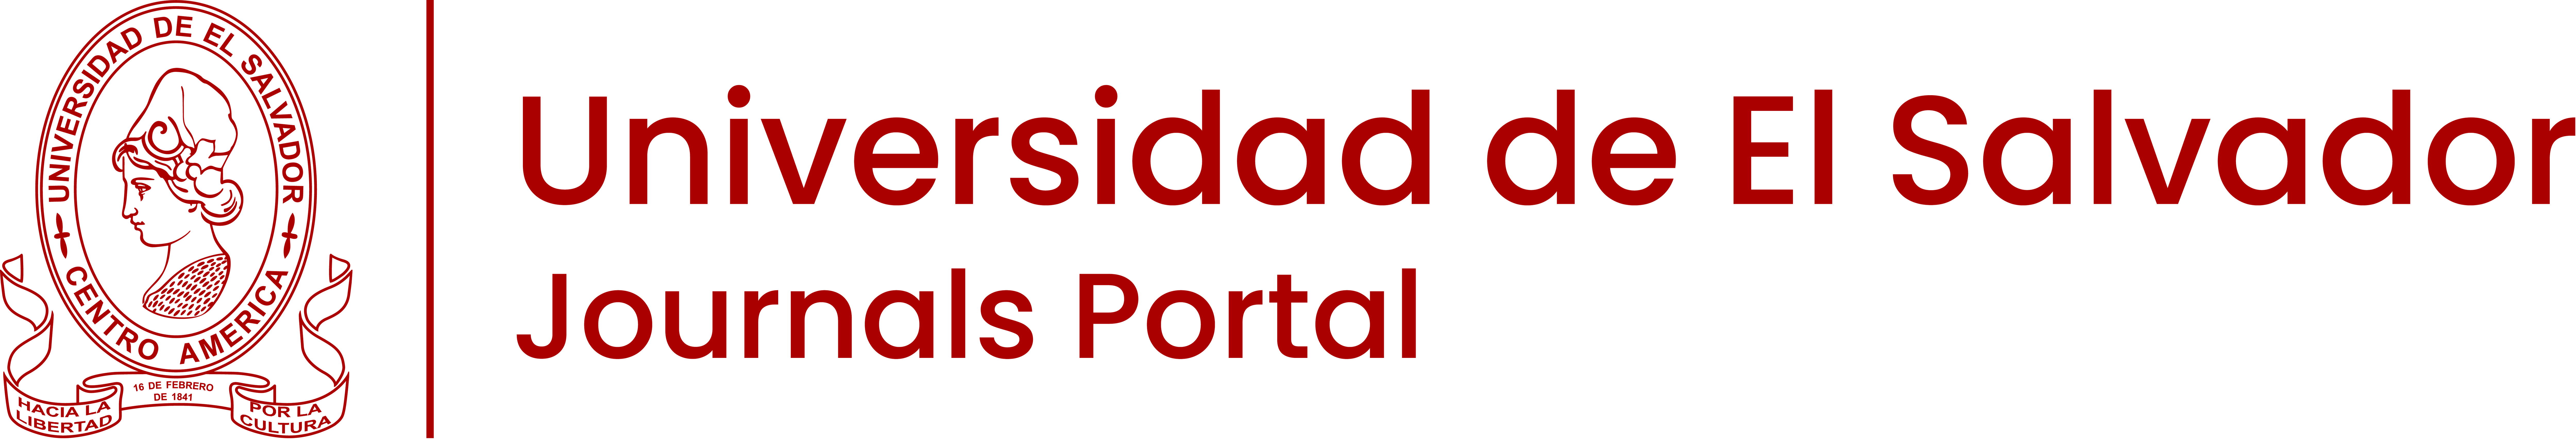 e-Journal portal from the Universidad de El Salvador